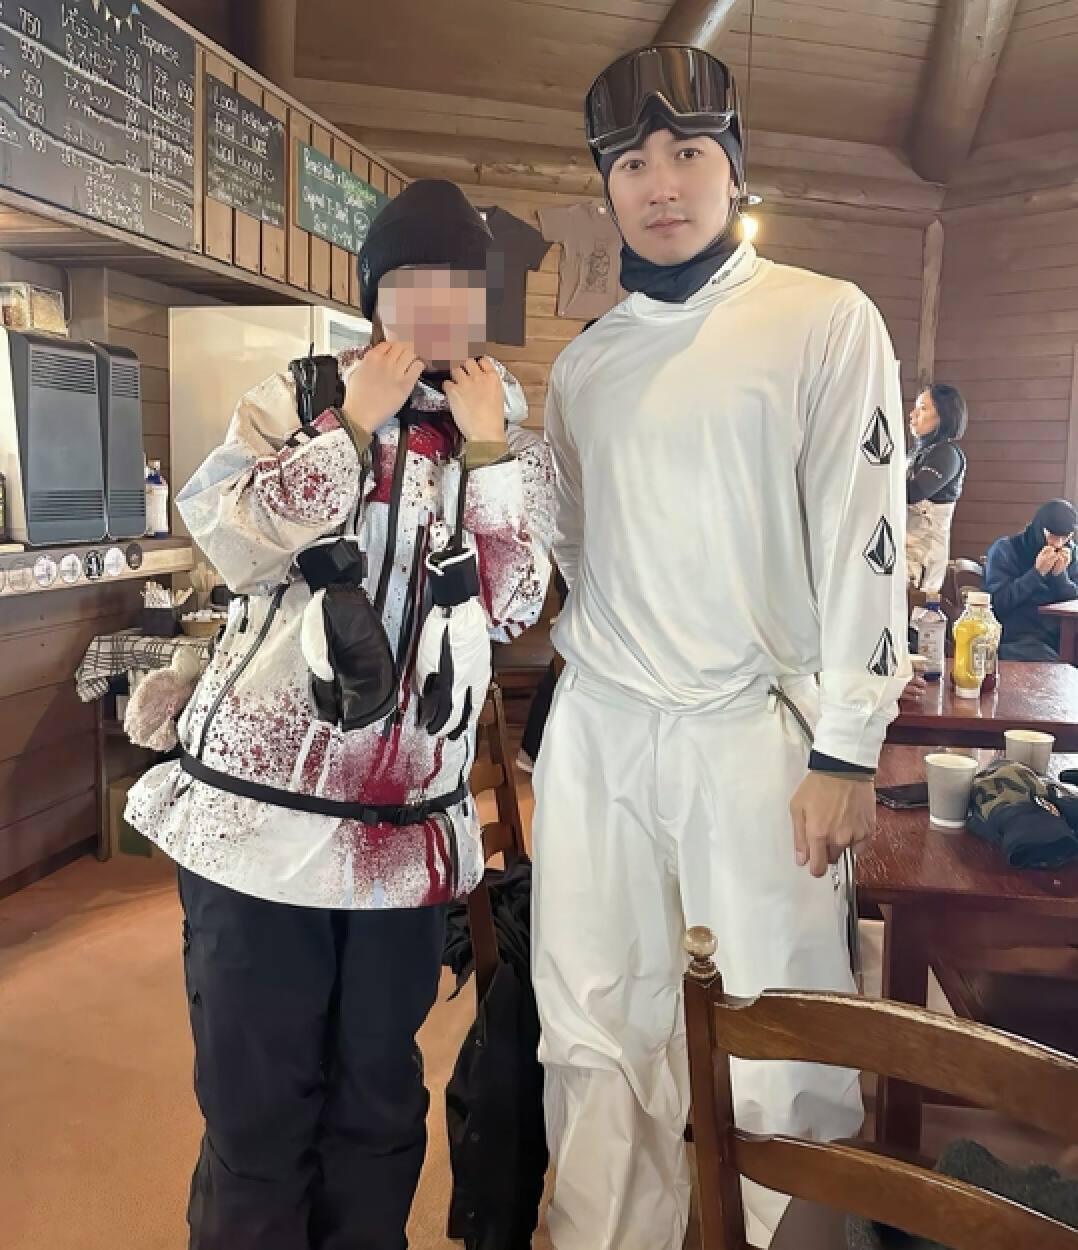 谢霆锋陈伟霆日本滑雪被偶遇,网友:王菲在吗